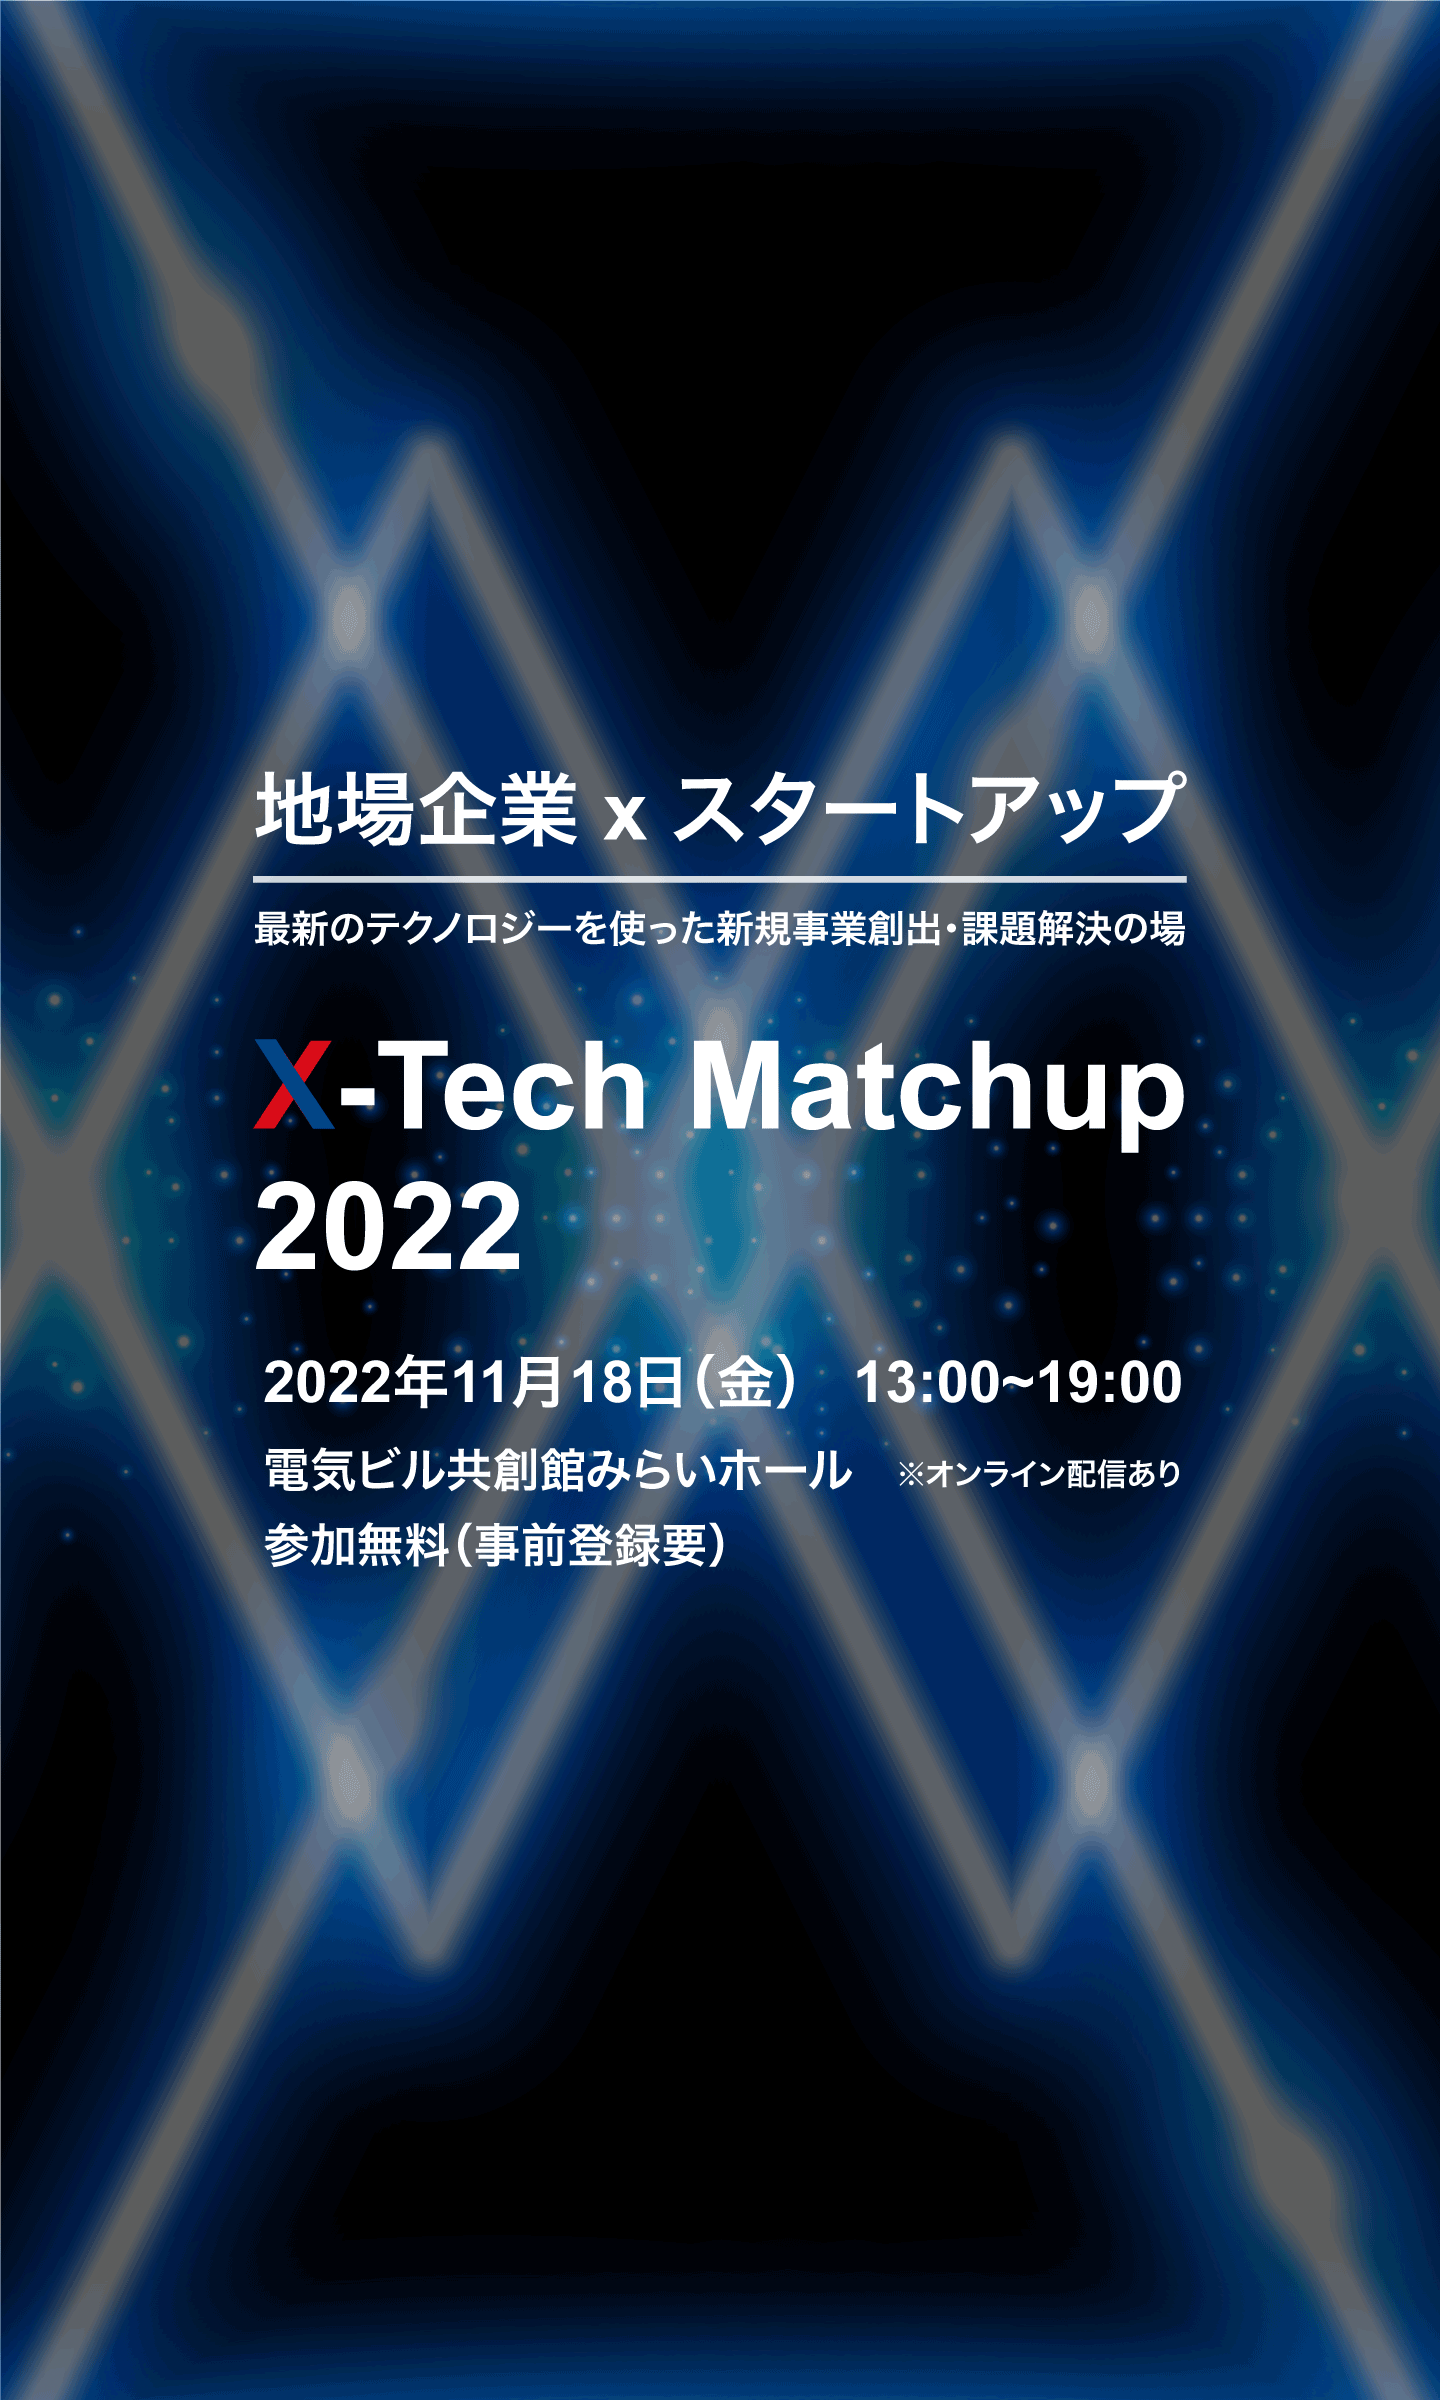 地場企業xスタートアップ　最新のテクノロジーを使った新規事業創出・課題解決の場　X-Tech Match up 2022　2022年11月18日（金)　参加無料（要事前登録）　オンライン配信あり